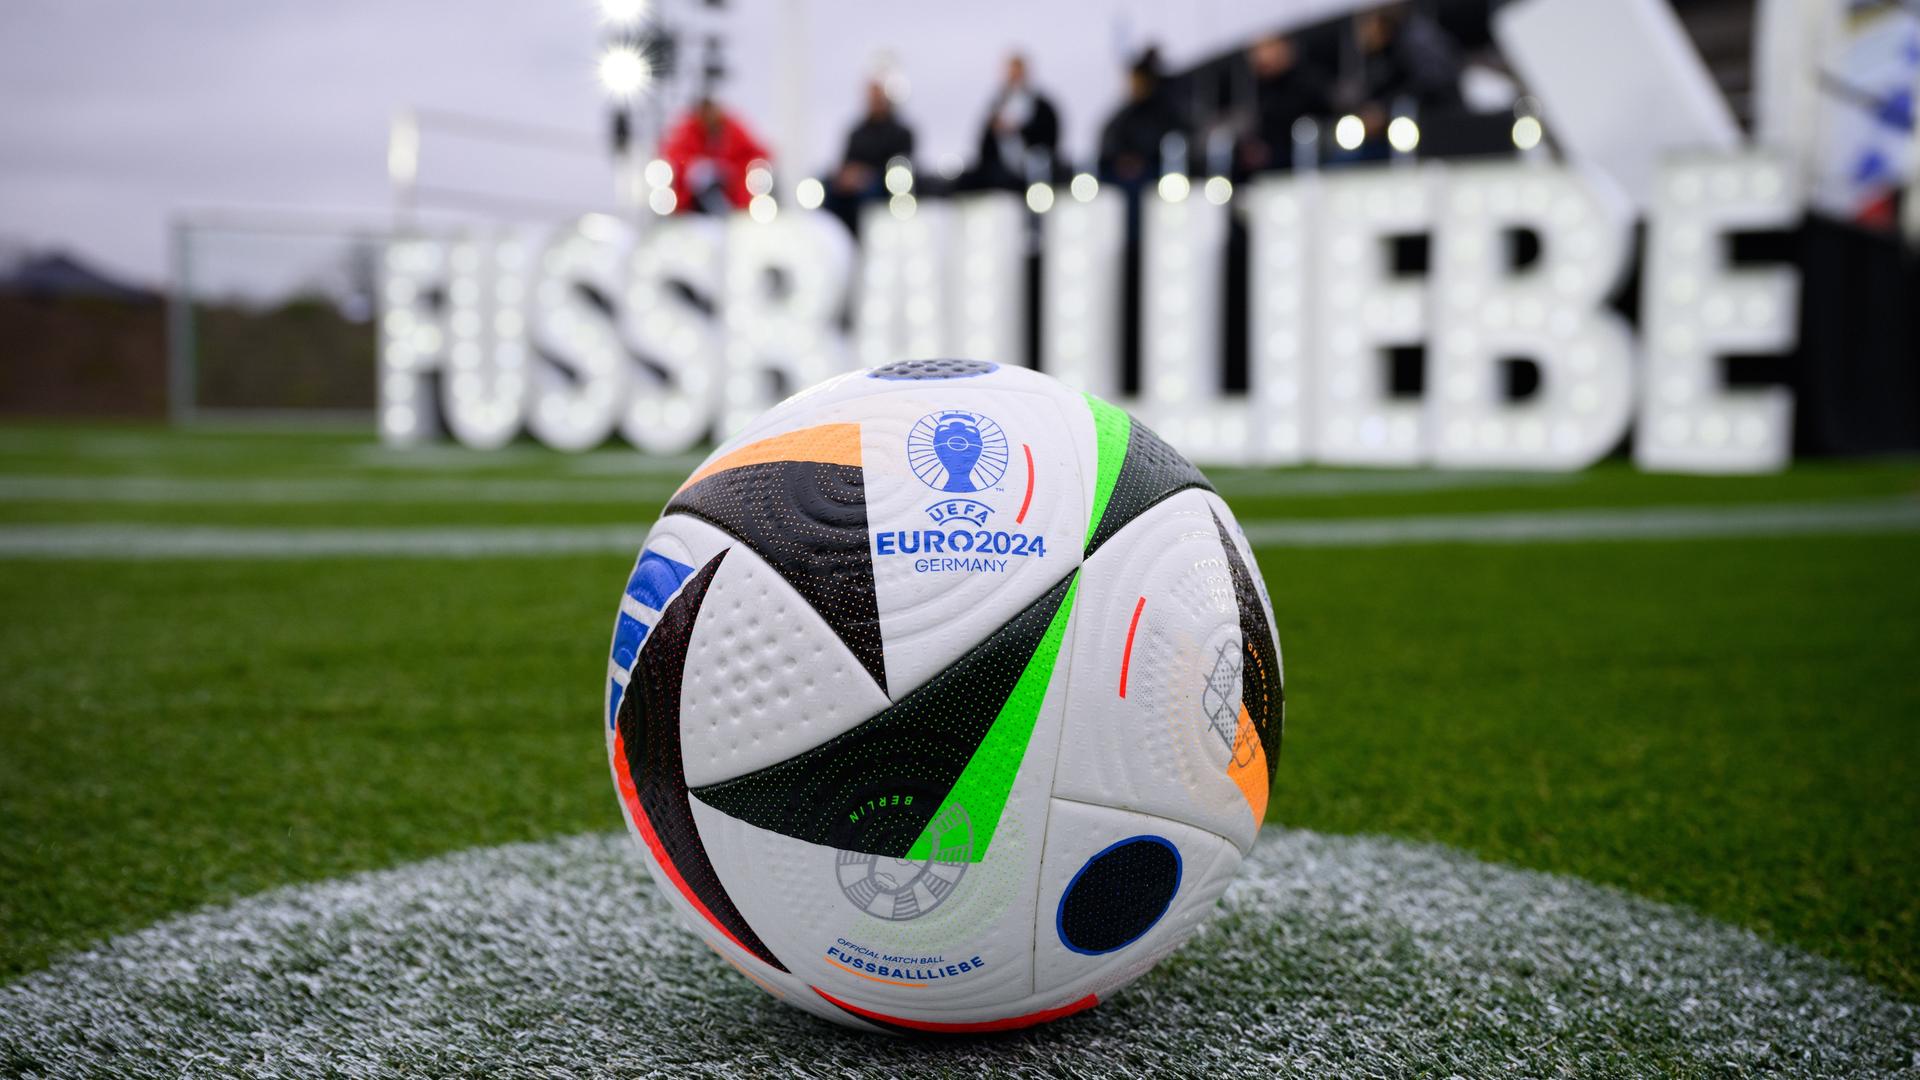 Der neue Fußball liegt bei der Vorstellung des EM-Spielballs für die UEFA EURO 2024 auf dem Maifeld am Olympiastadion. Im Hintergrund sieht verschwommen in großen weißen Lettern den Namen "Fussballliebe".